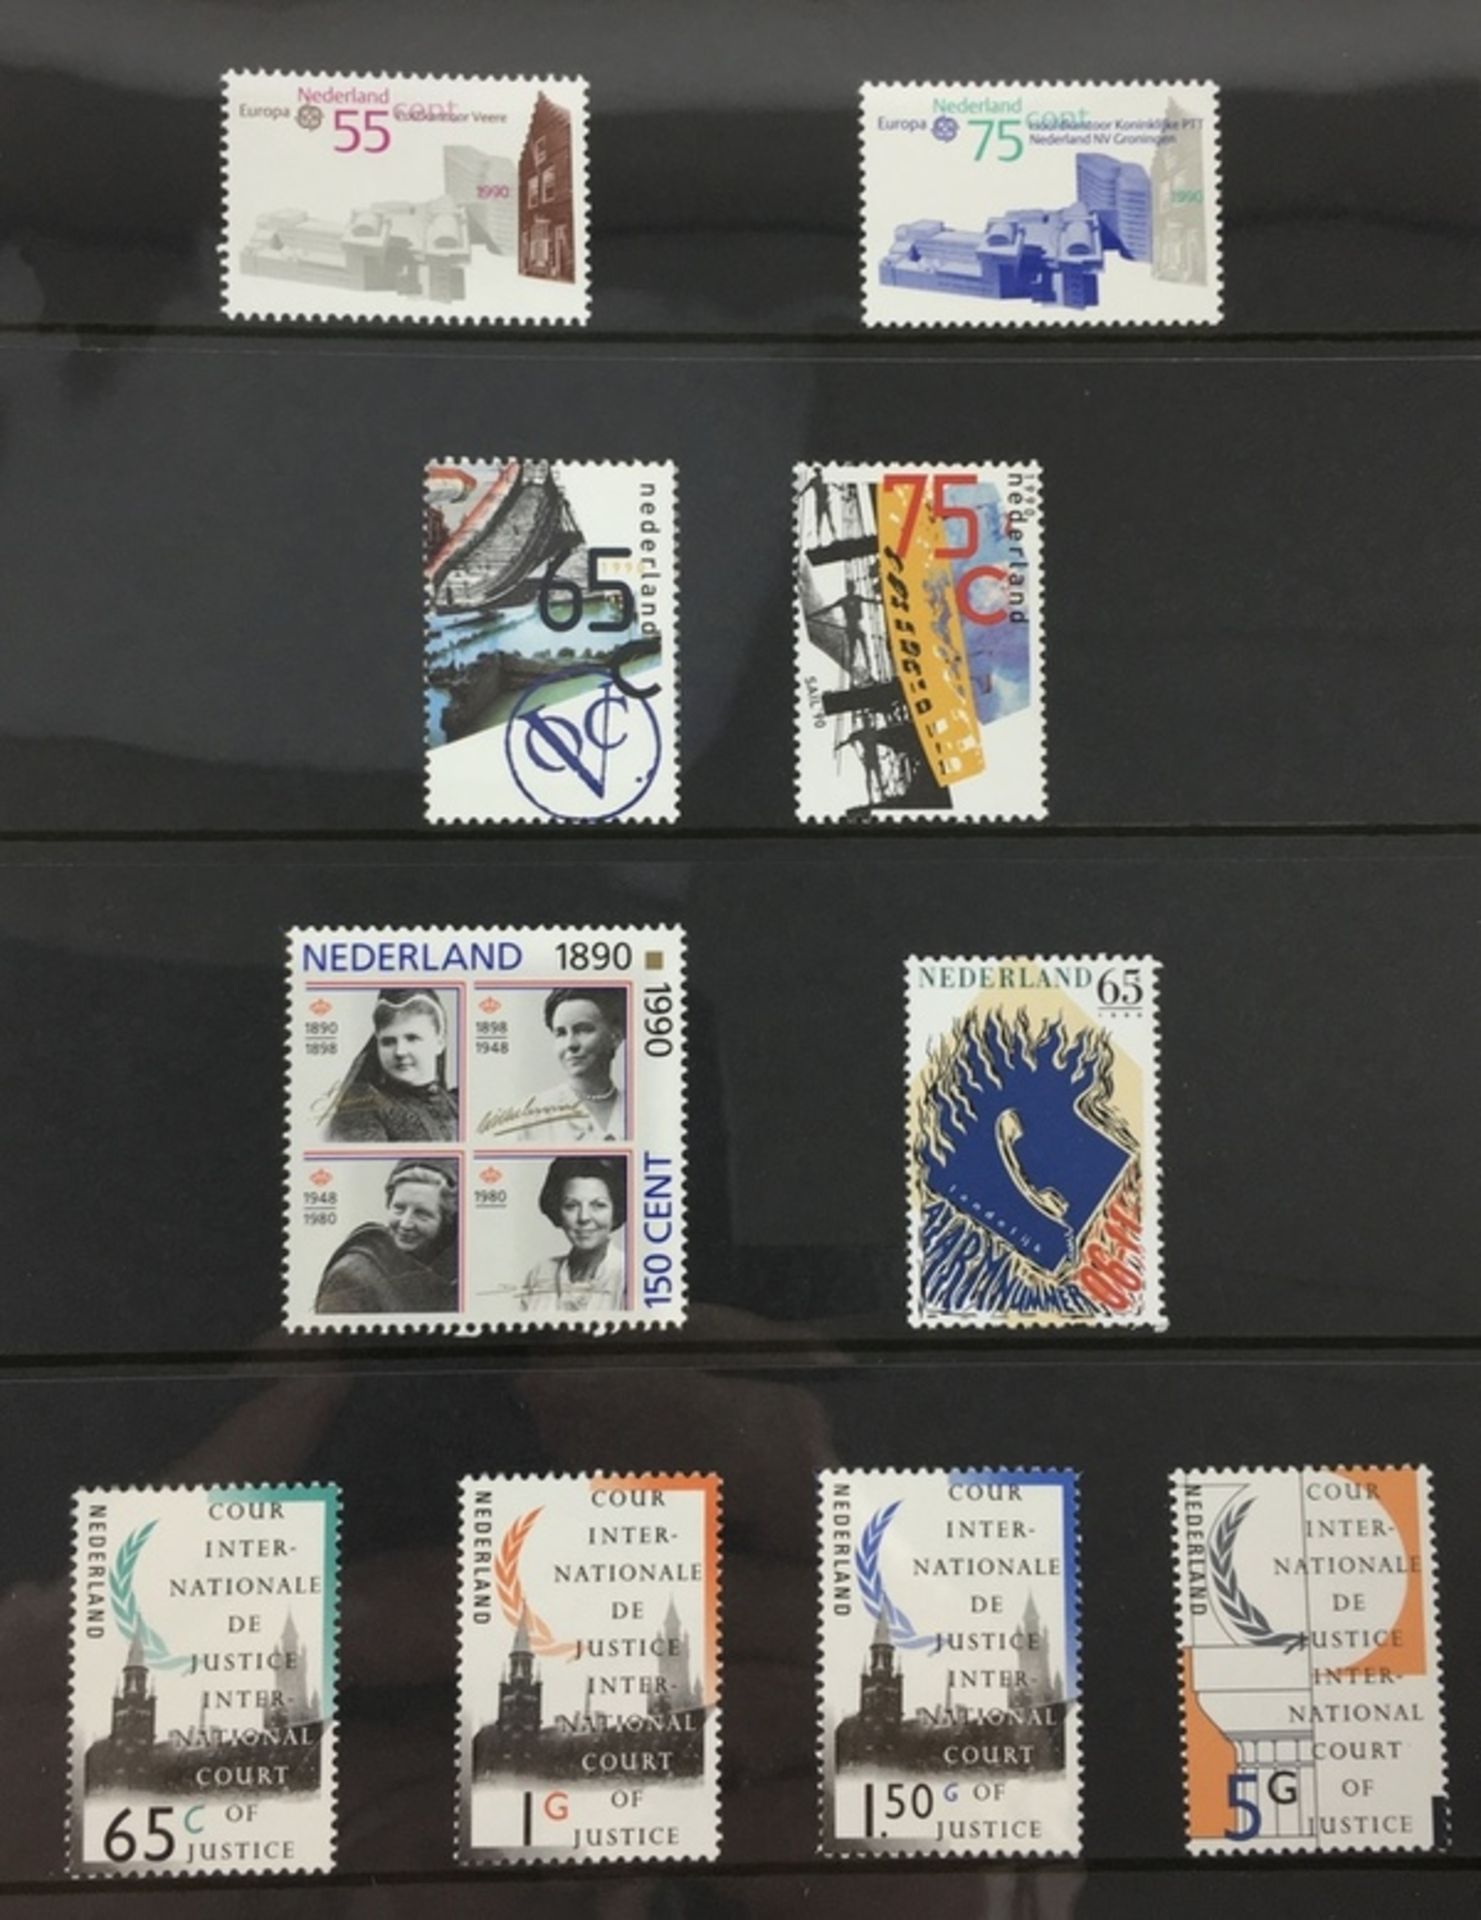 (Filatelie) Jaarcollecties postzegelsJaarcollecties postzegels uit 1998, 1992 (3x), 1991 (2x), - Image 3 of 4